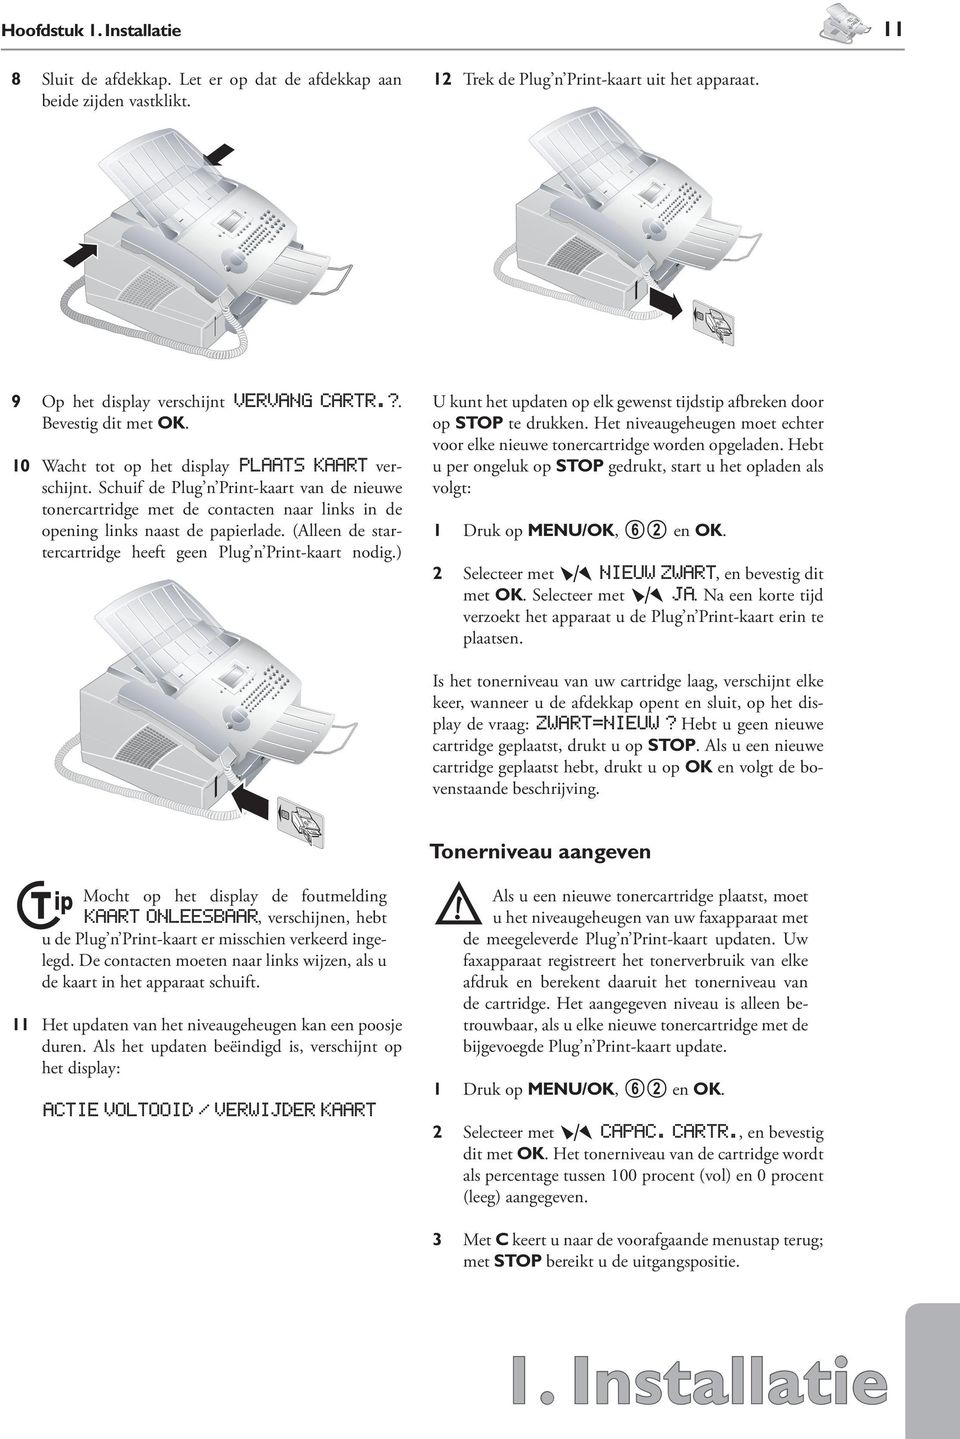 Schuif de Plug n Print-kaart van de nieuwe tonercartridge met de contacten naar links in de opening links naast de papierlade. (Alleen de startercartridge heeft geen Plug n Print-kaart nodig.